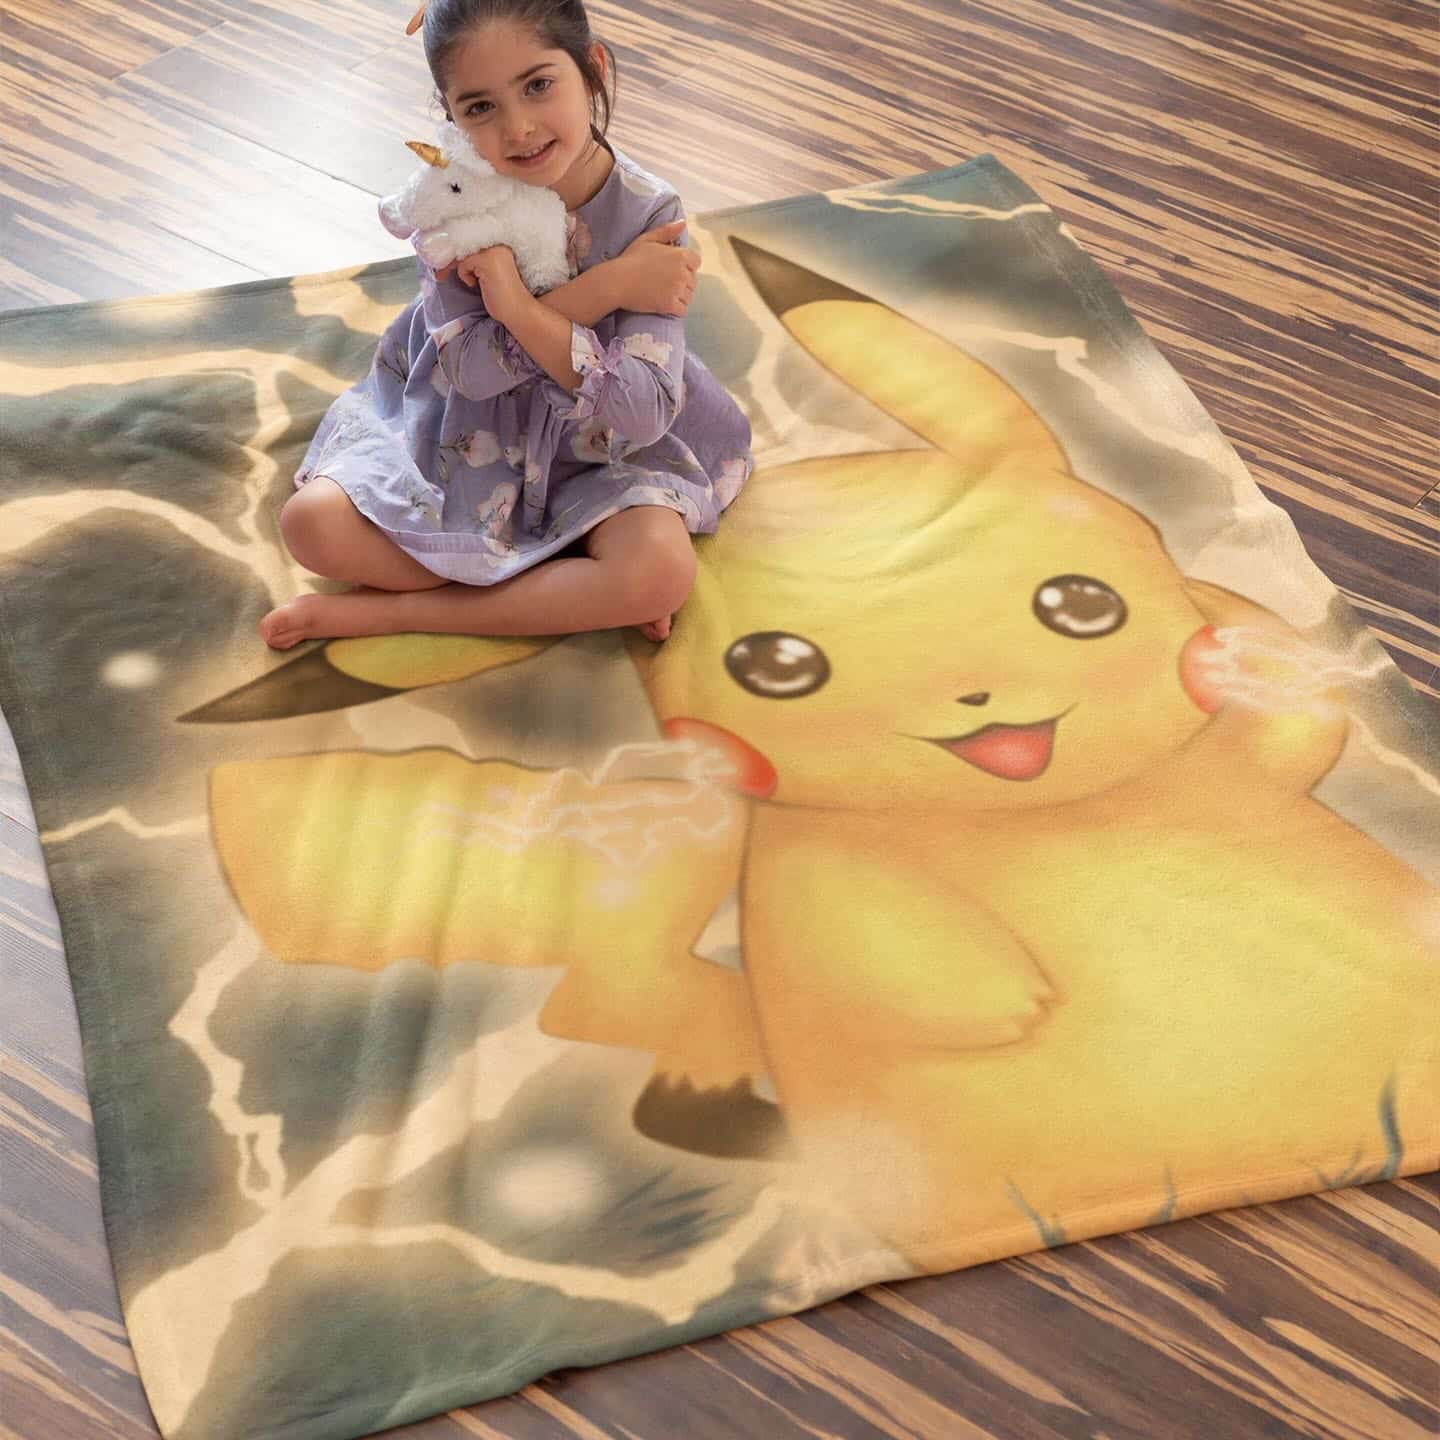 Un plaid pikachu et posé sur le sol en parquet, une petite fille est assise dessus.